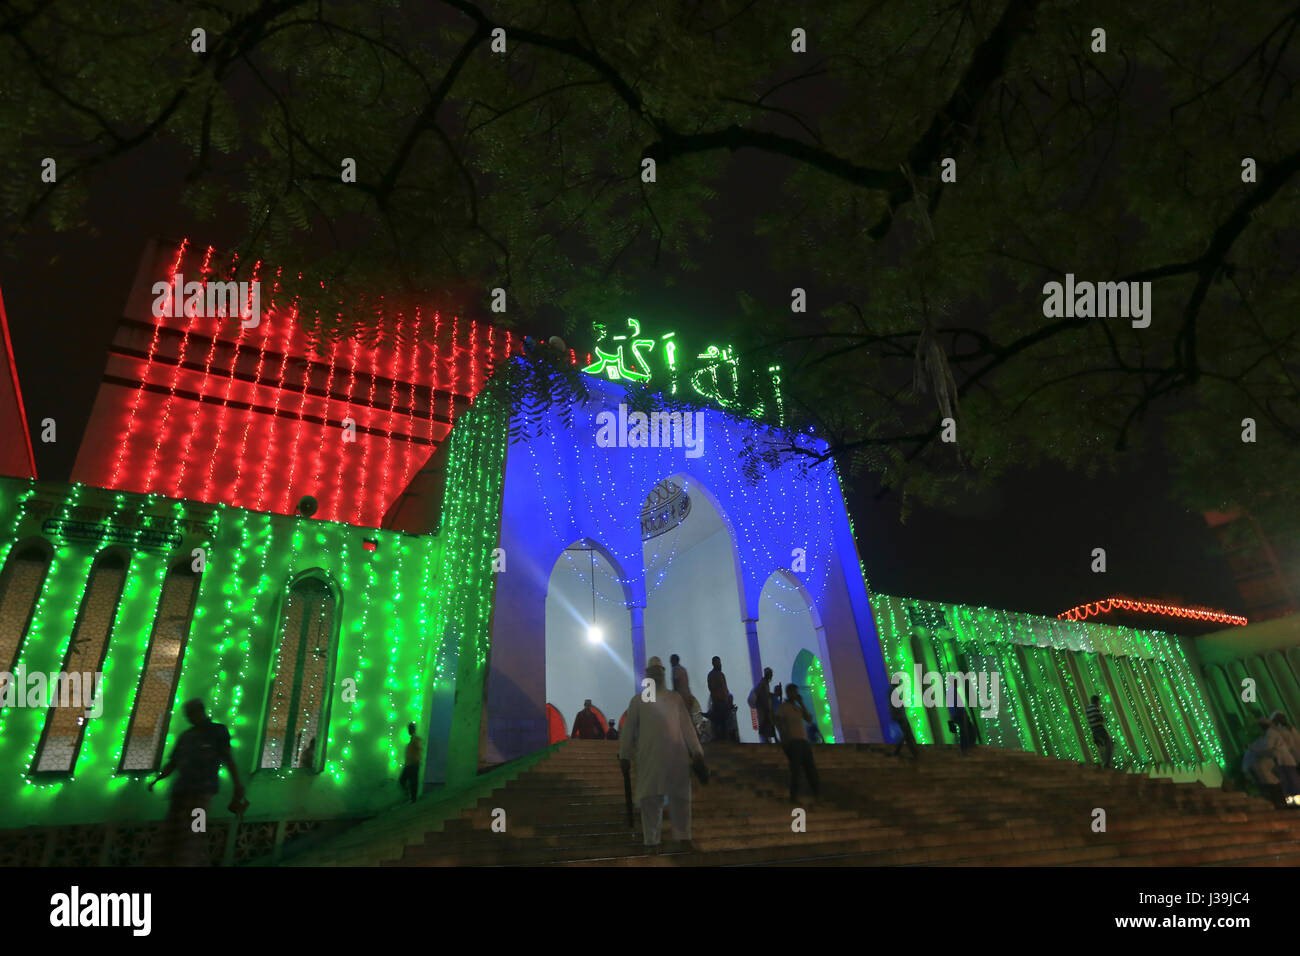 Baitul Mukarram Moschea Nazionale decora con luci colorate in occasione dell'Eid-ul - Adha. Dacca in Bangladesh. Foto Stock